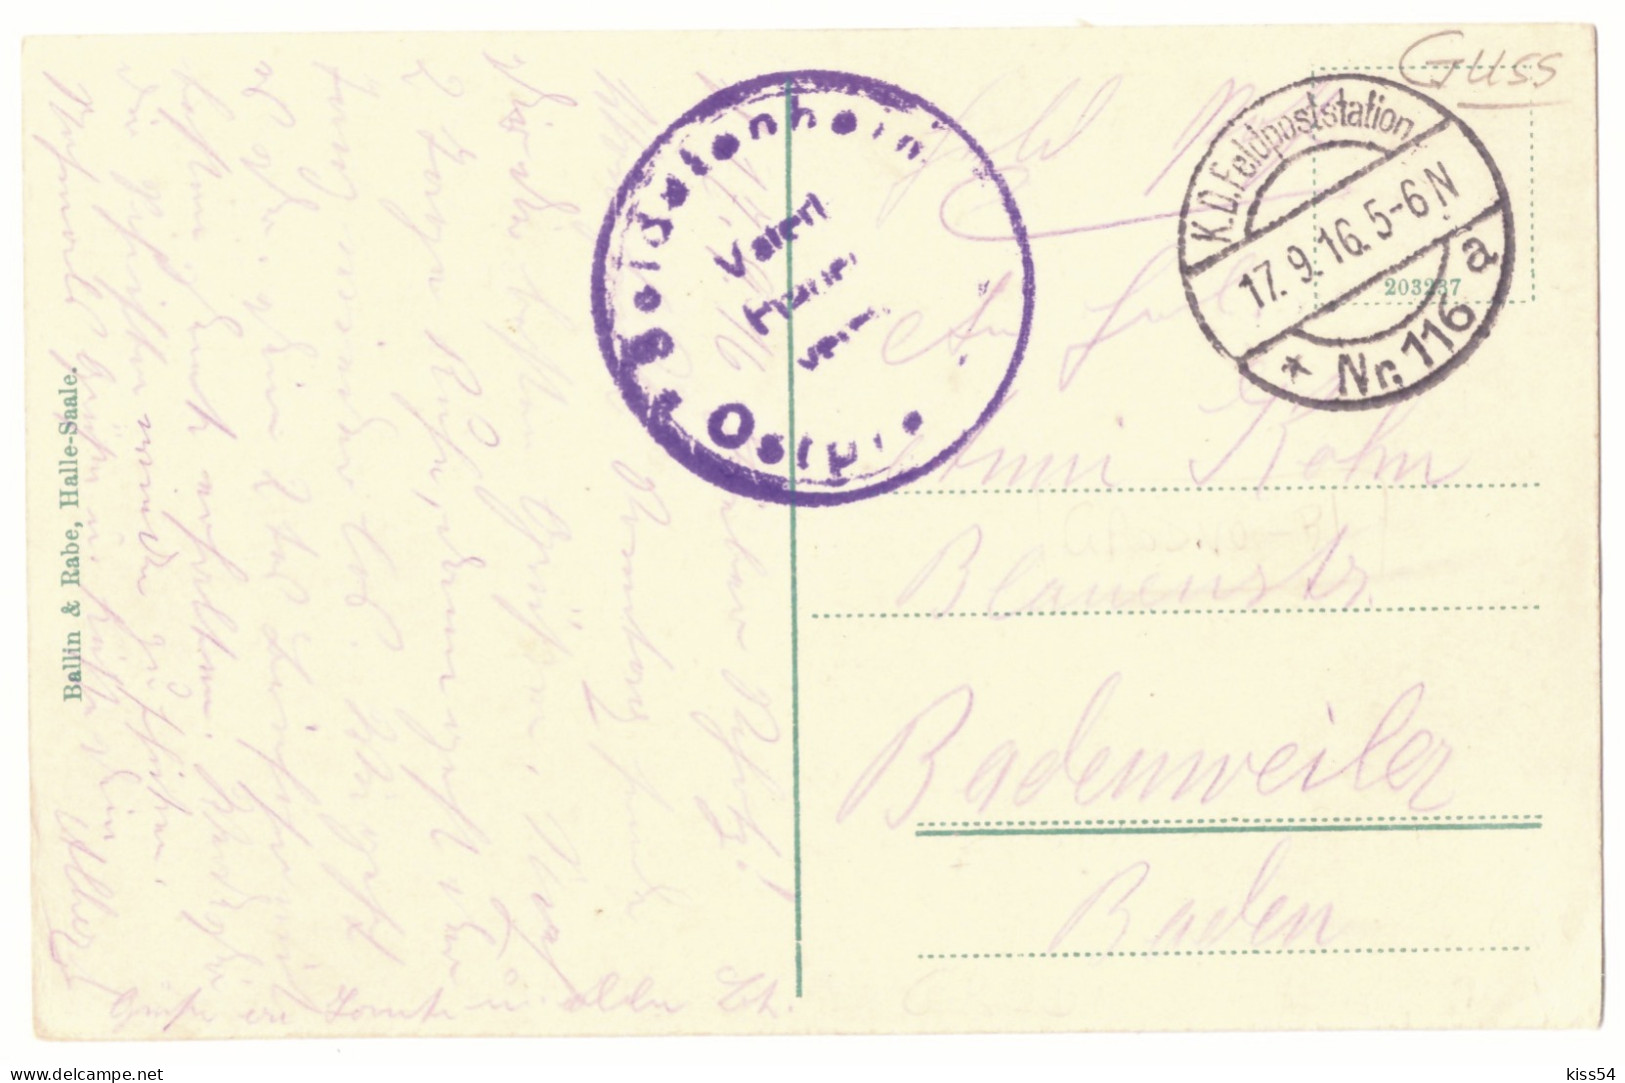 BL 32 - 25089 GRODNO, Panorama, Belarus - Old Postcard, CENSOR - Used - 1916 - Belarus